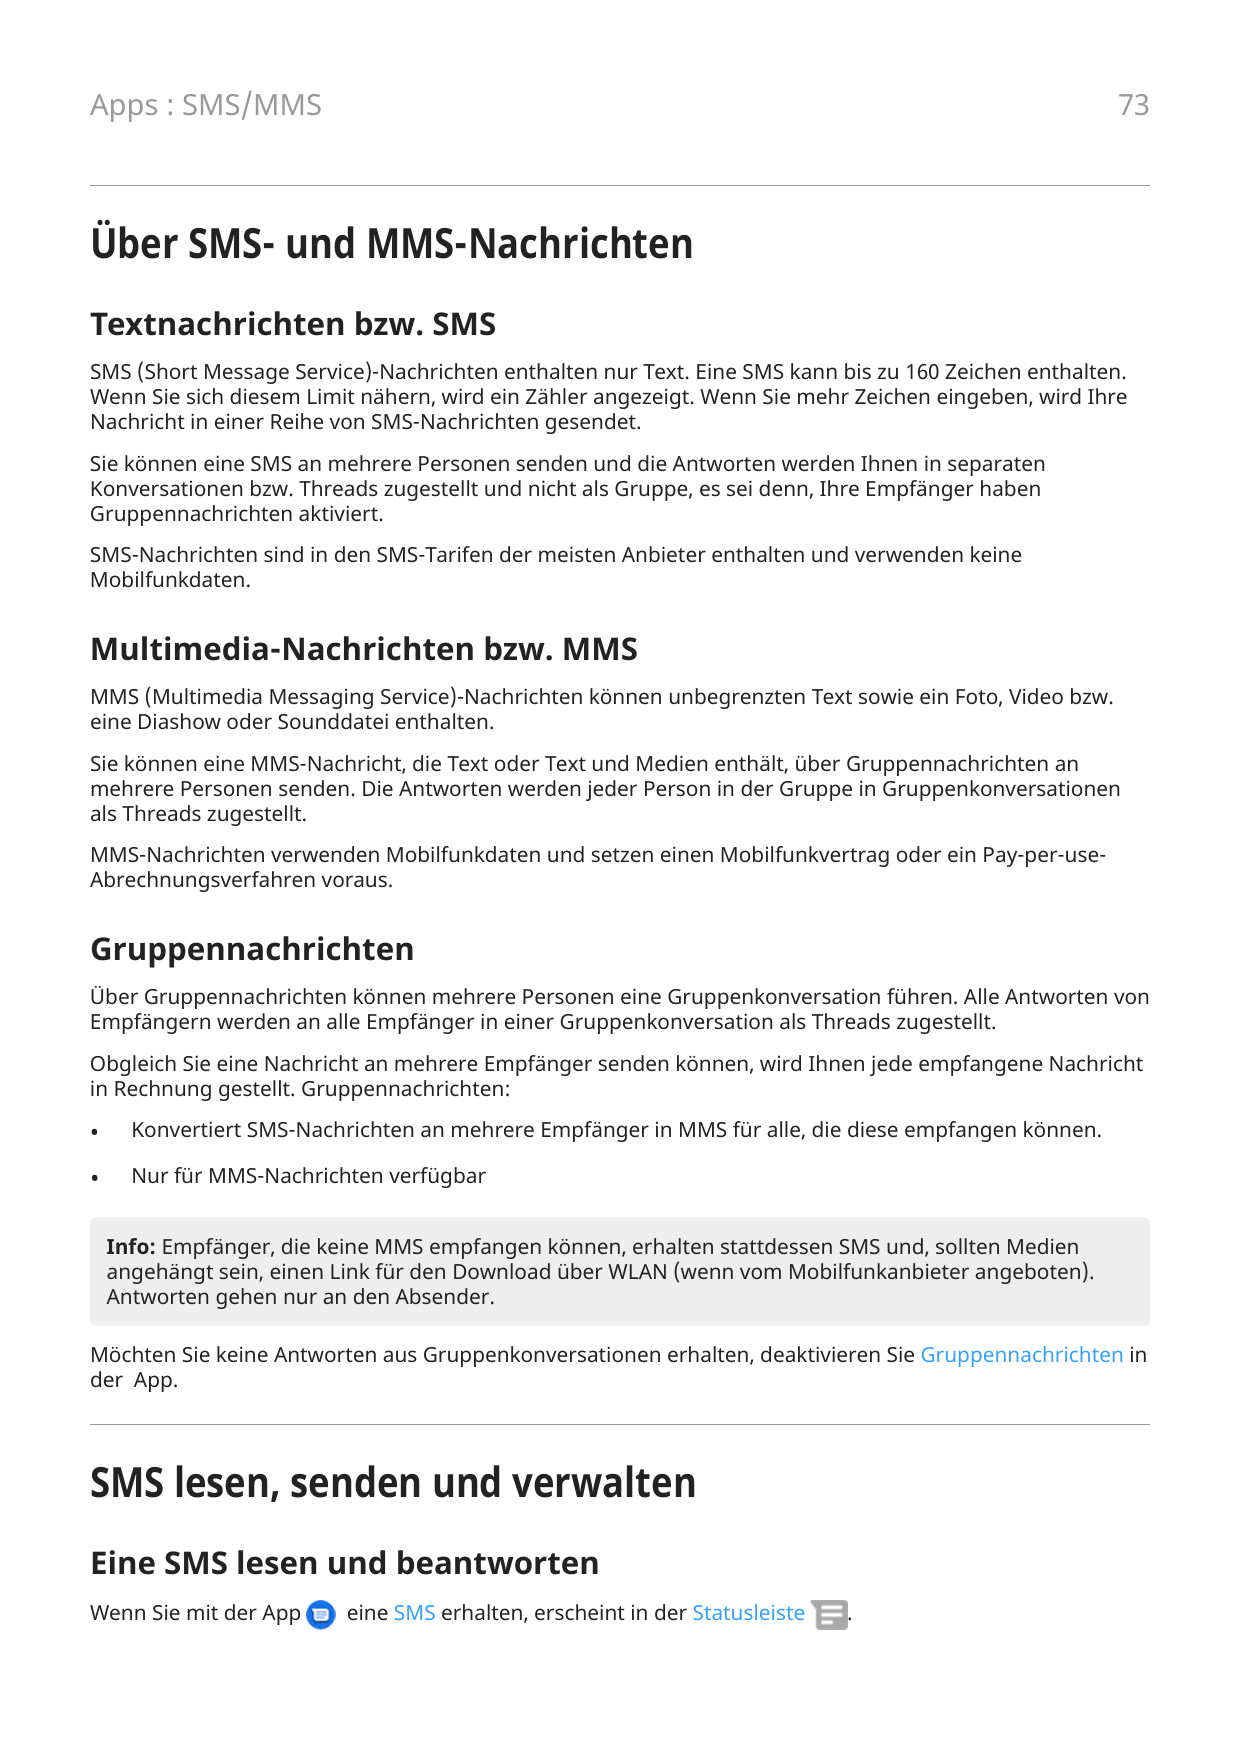 73Apps : SMS/MMSÜber SMS- und MMS-NachrichtenTextnachrichten bzw. SMSSMS (Short Message Service)-Nachrichten enthalten nur Text.